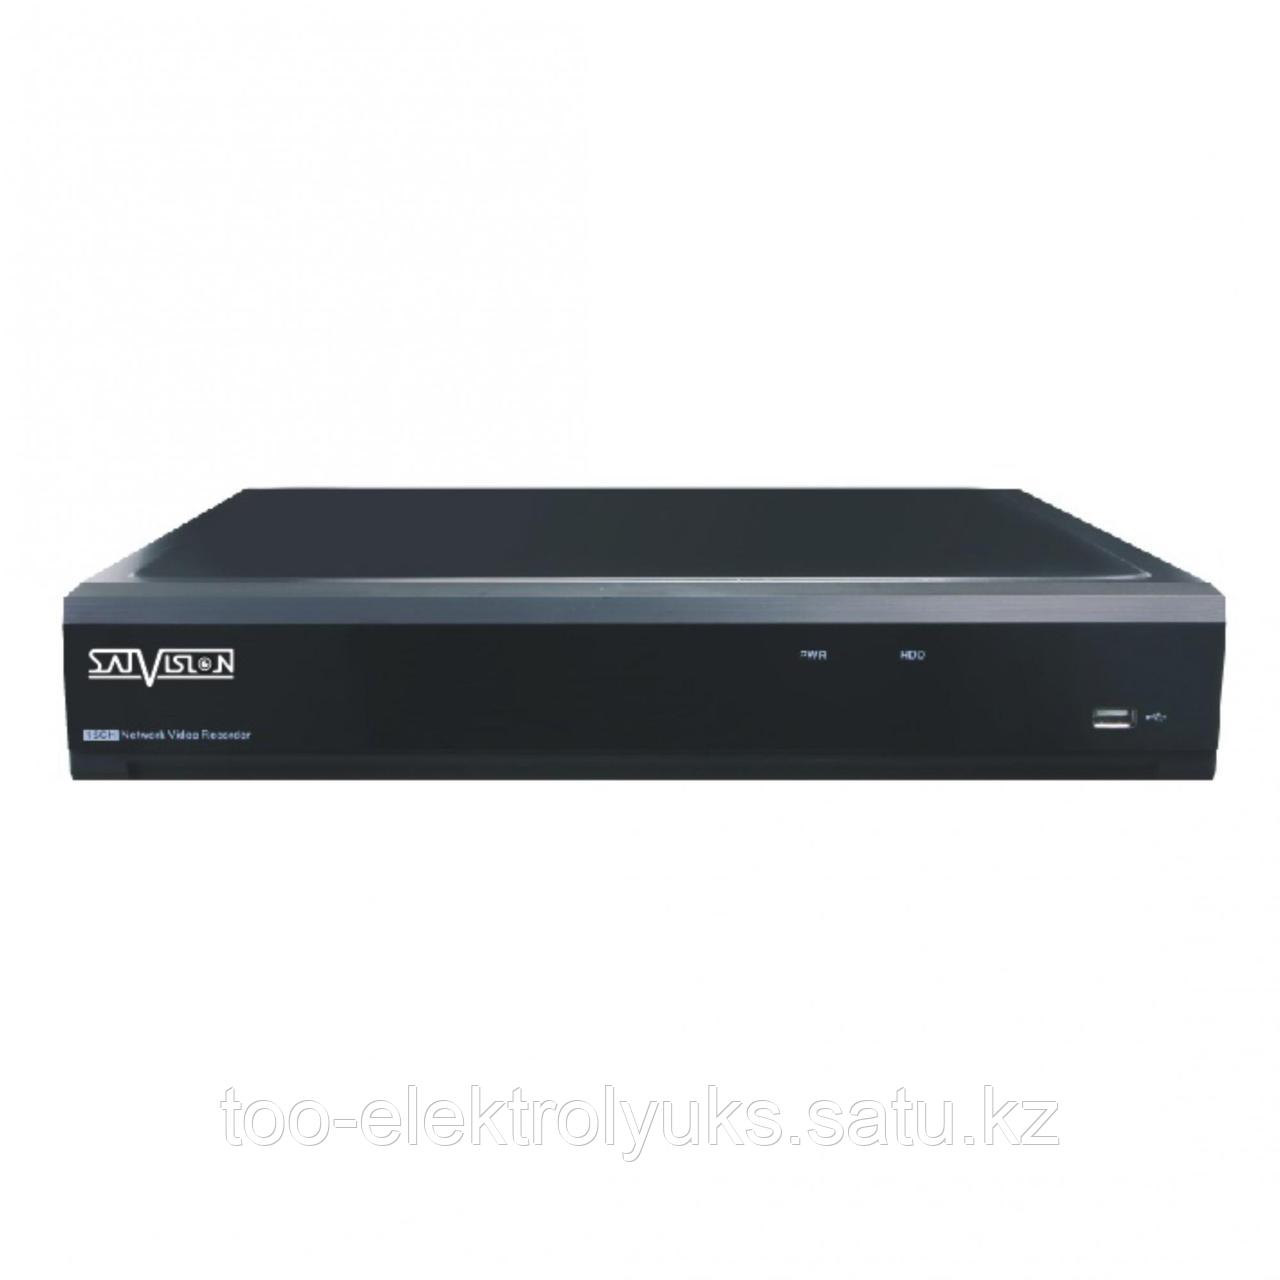 4-х канальный регистратор SVR-4115N 4AHD*1080N+2IP*1080p, 4RCA/1RCA, 1HDD до 8Tb, VGA/HDMI